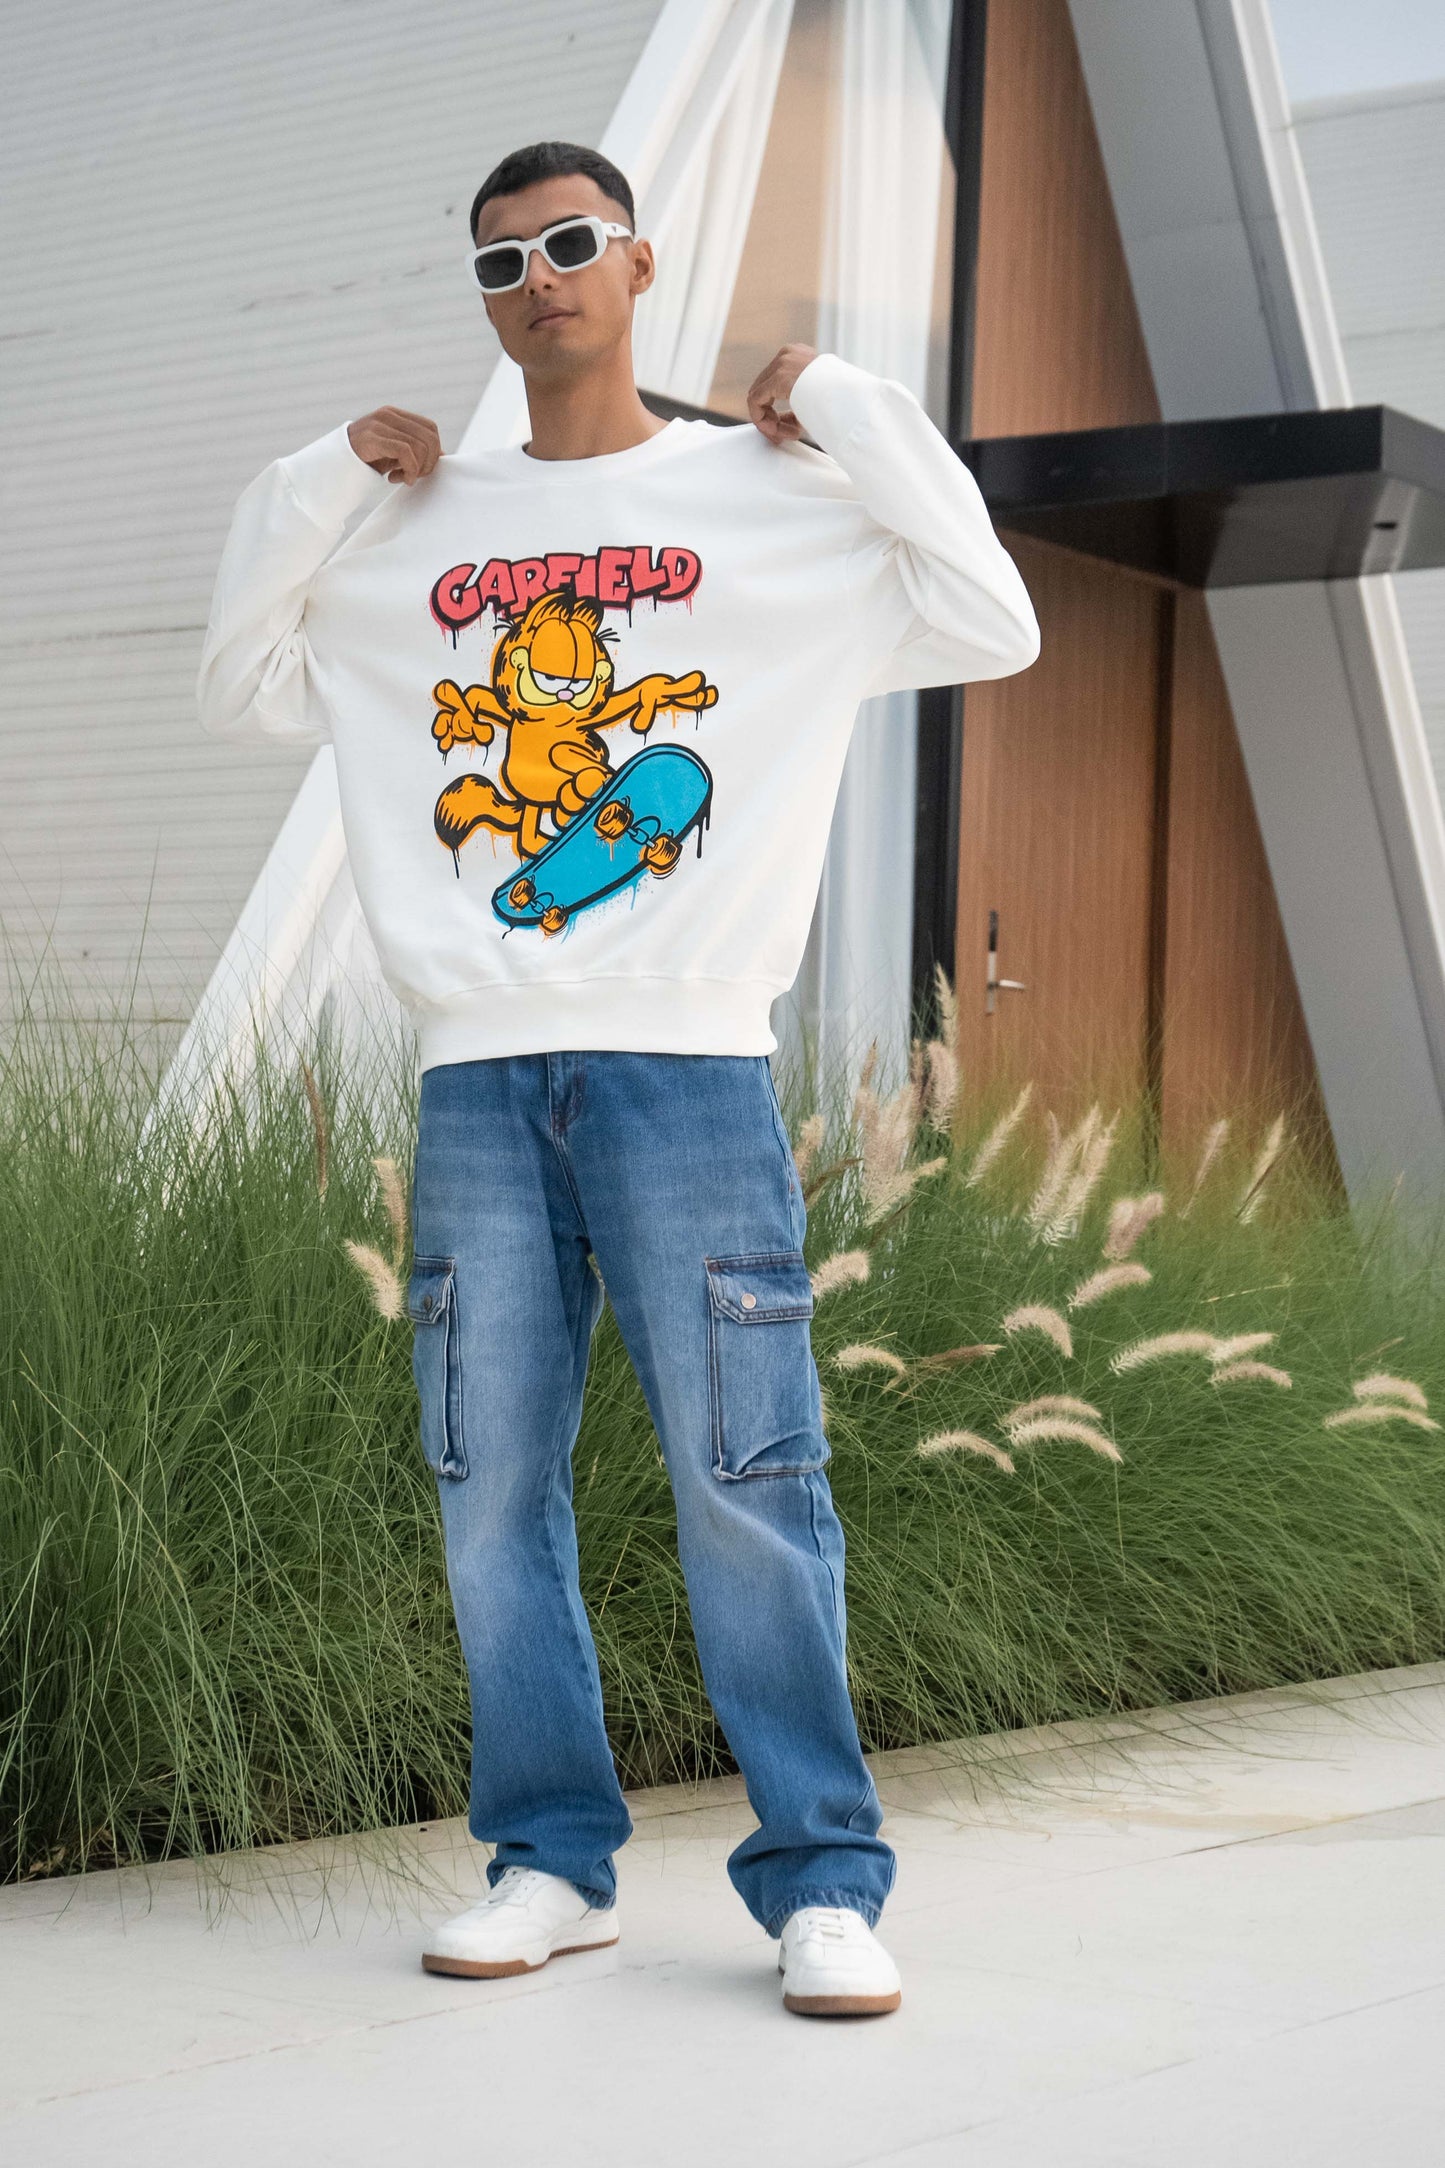 Garfield: Oversized Sweatshirt